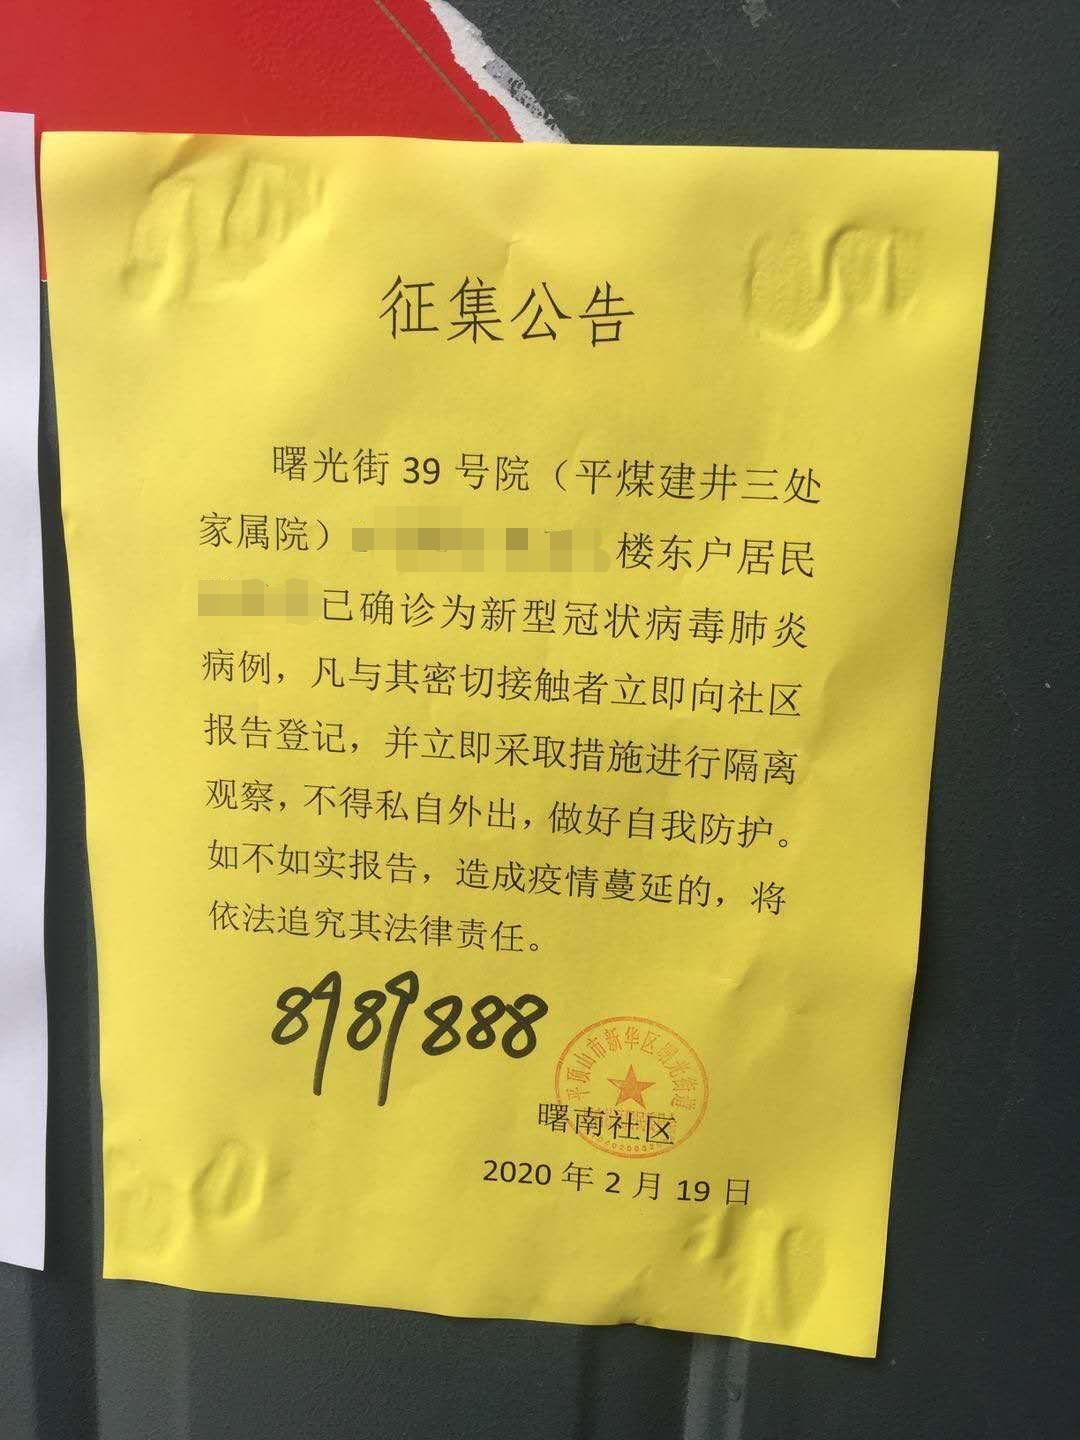 河南一社区将疑似病例公示为确诊病例 社区书记被停职